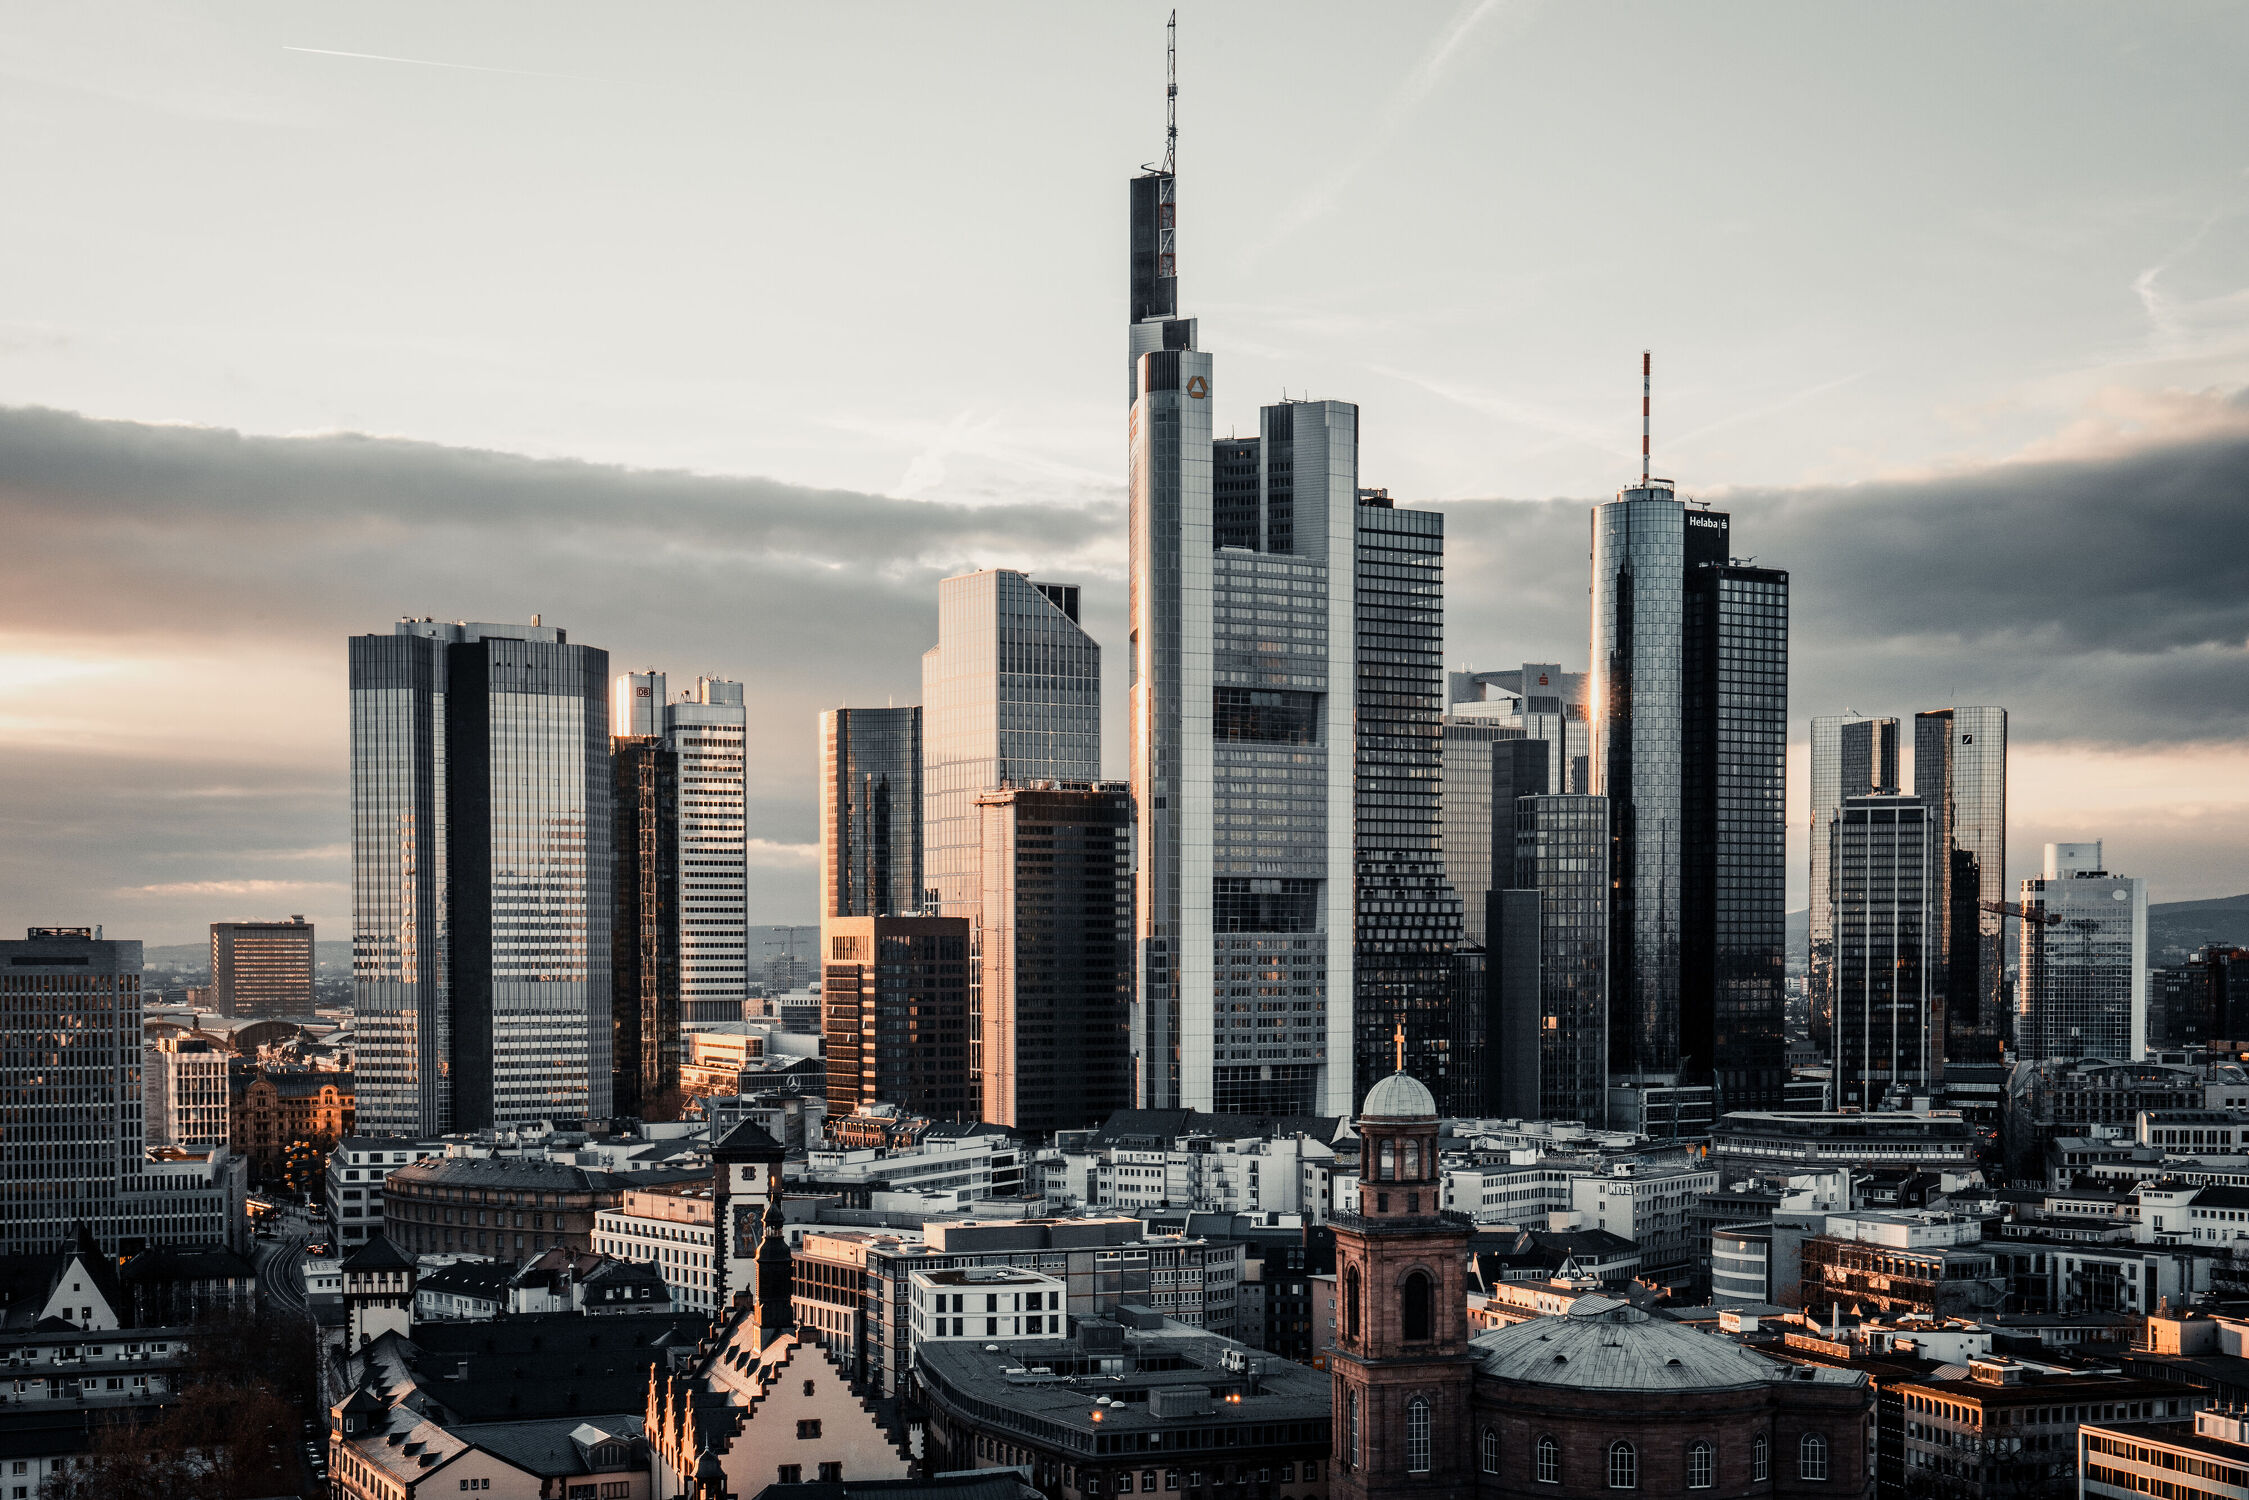 Bild mit Sonnenuntergang, Städte, Panorama, urban, Frankfurt am Main, Skyline, Hochhäuser, finanzmetropole, Metallic, Effekt